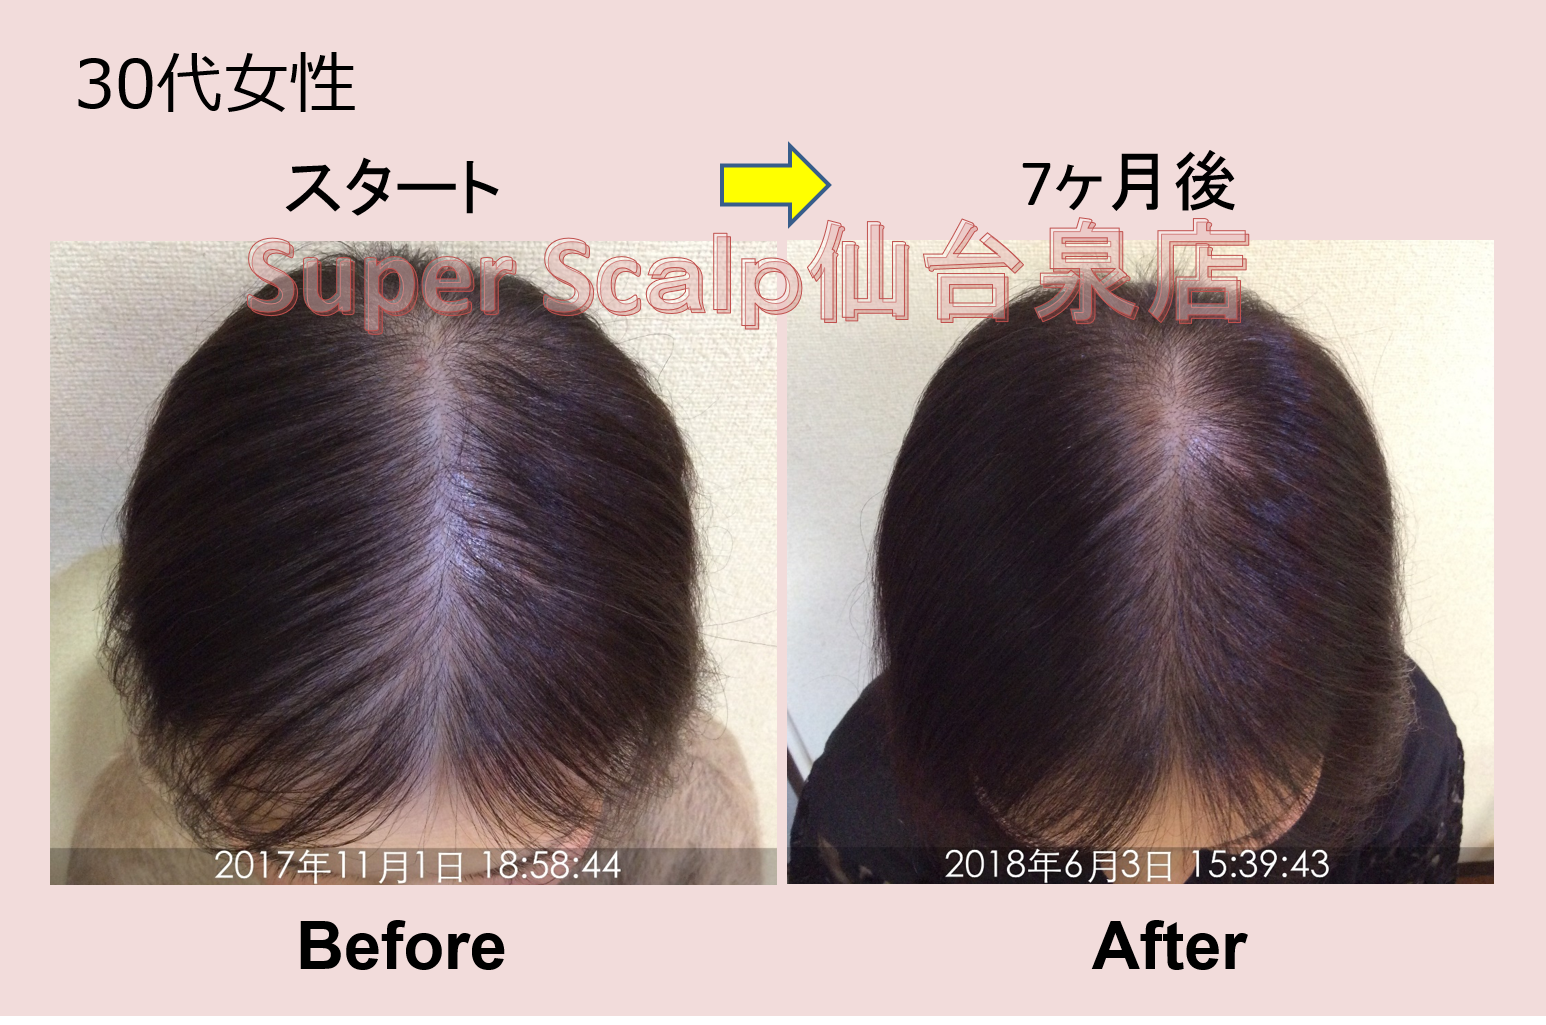 重度のびまん性脱毛症が7カ月で改善。30代女性の発毛症例をご紹介します。 仙台で薄毛AGA対策！女性男性の薄毛、AGA改善発毛98.7